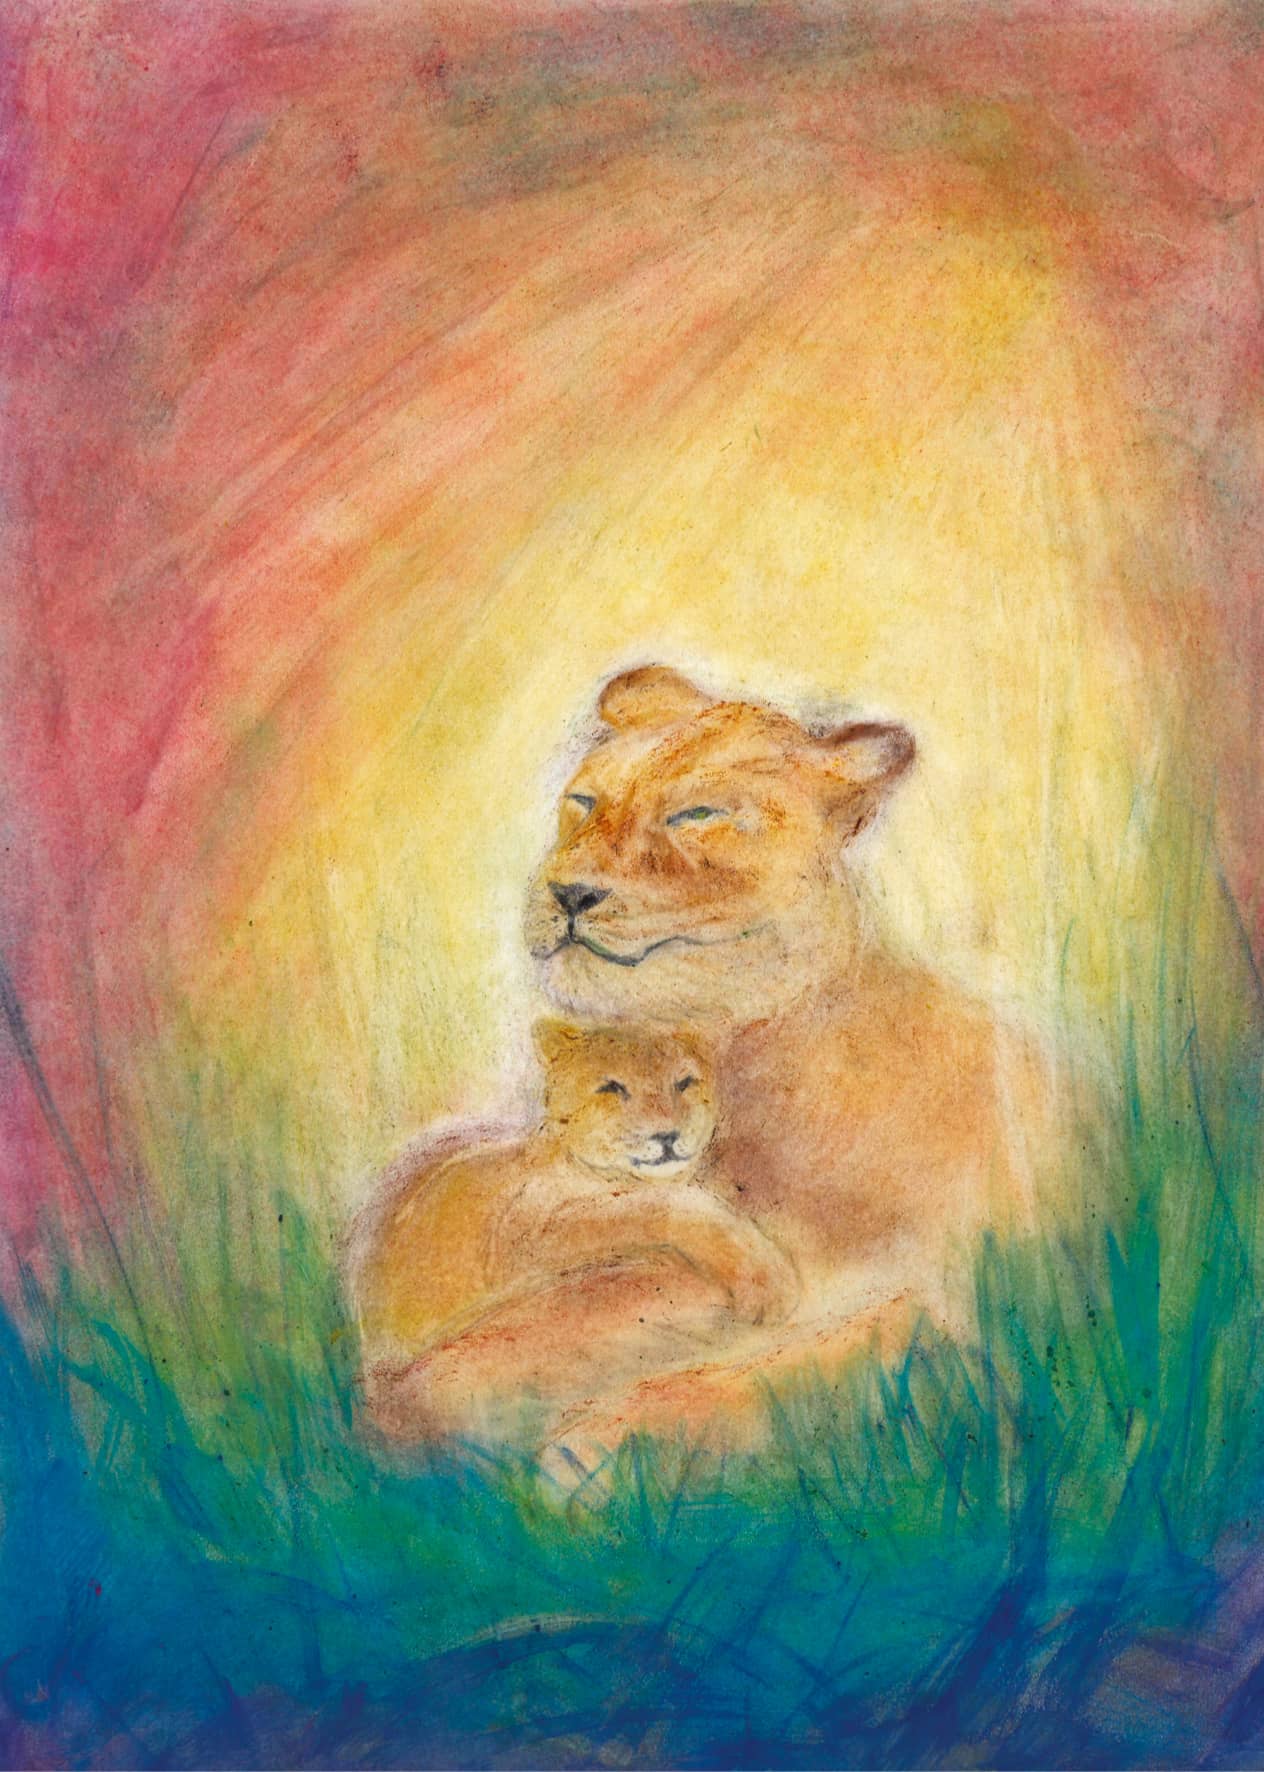 Löwin mit Jungem, kunstvoll in Seccorell-Farben auf Postkarte verewigt, zeigt leuchtende Farbharmonie und zarte Schattierung.